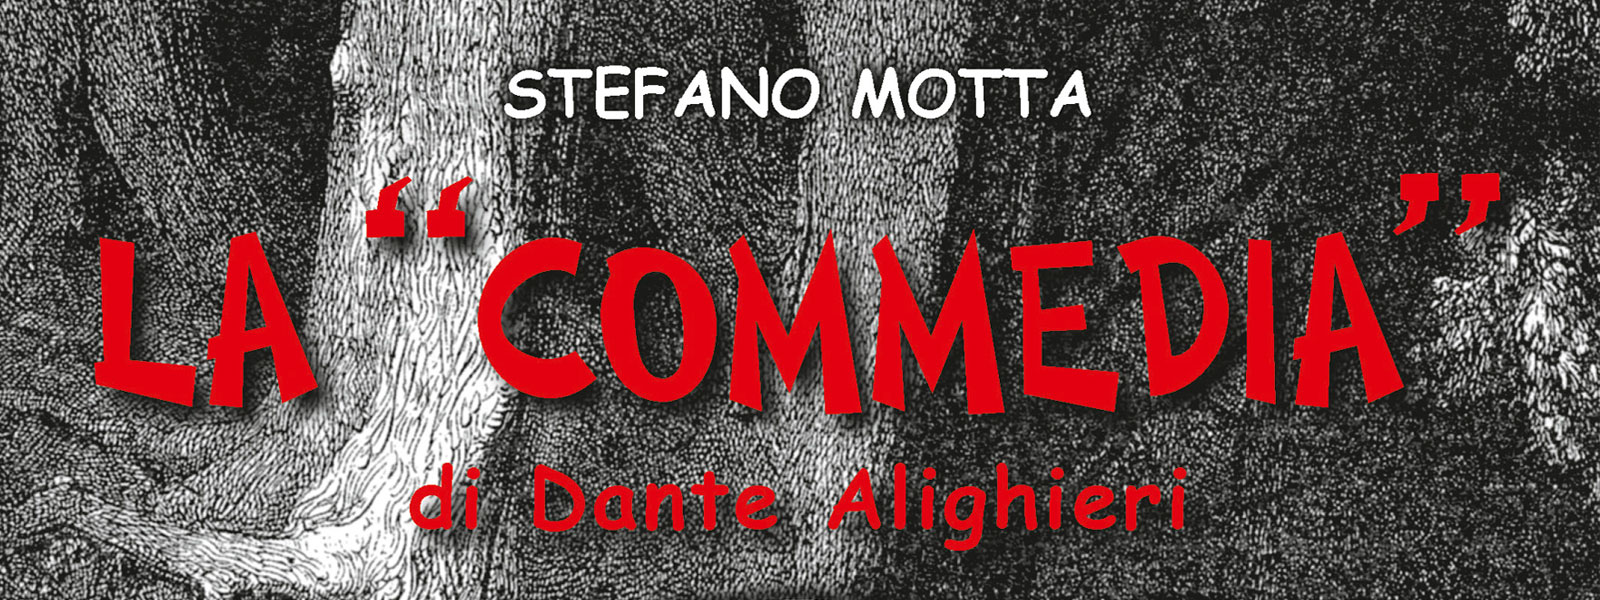 La “Commedia” di Dante Alighieri. Stefano Motta